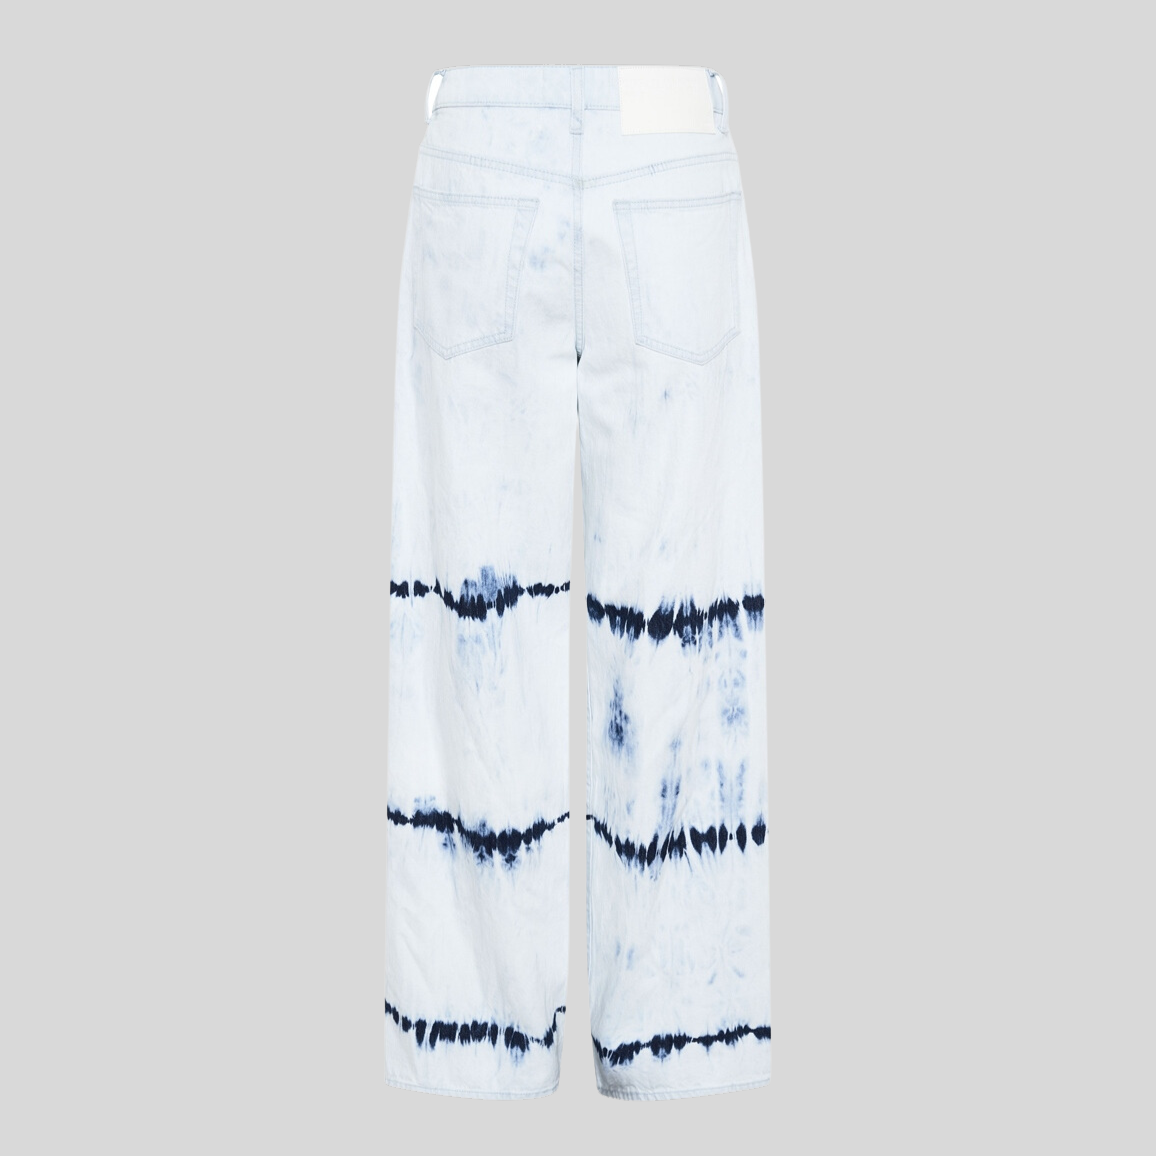 Gotstyle Fashion - One Teaspoon Denim Tie-Dye Mid Waist Wide Leg Flare Jeans - Light Blue